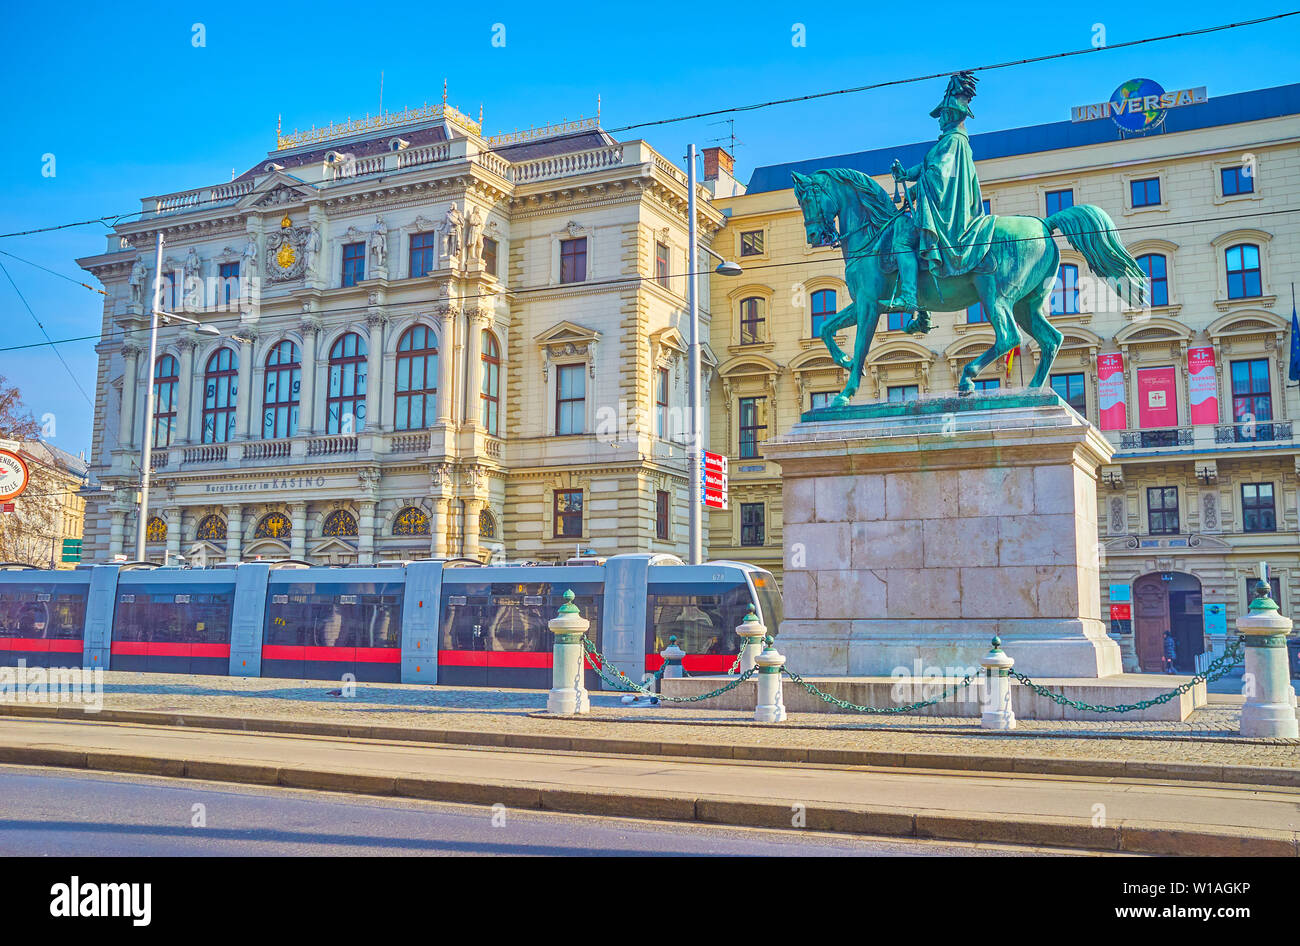 VIENNA, Austria - 18 febbraio 2019: La scena urbana in Piazza Schwarzenberg con moderni tram, edifici classici e statua equestre, in Febbraio Foto Stock